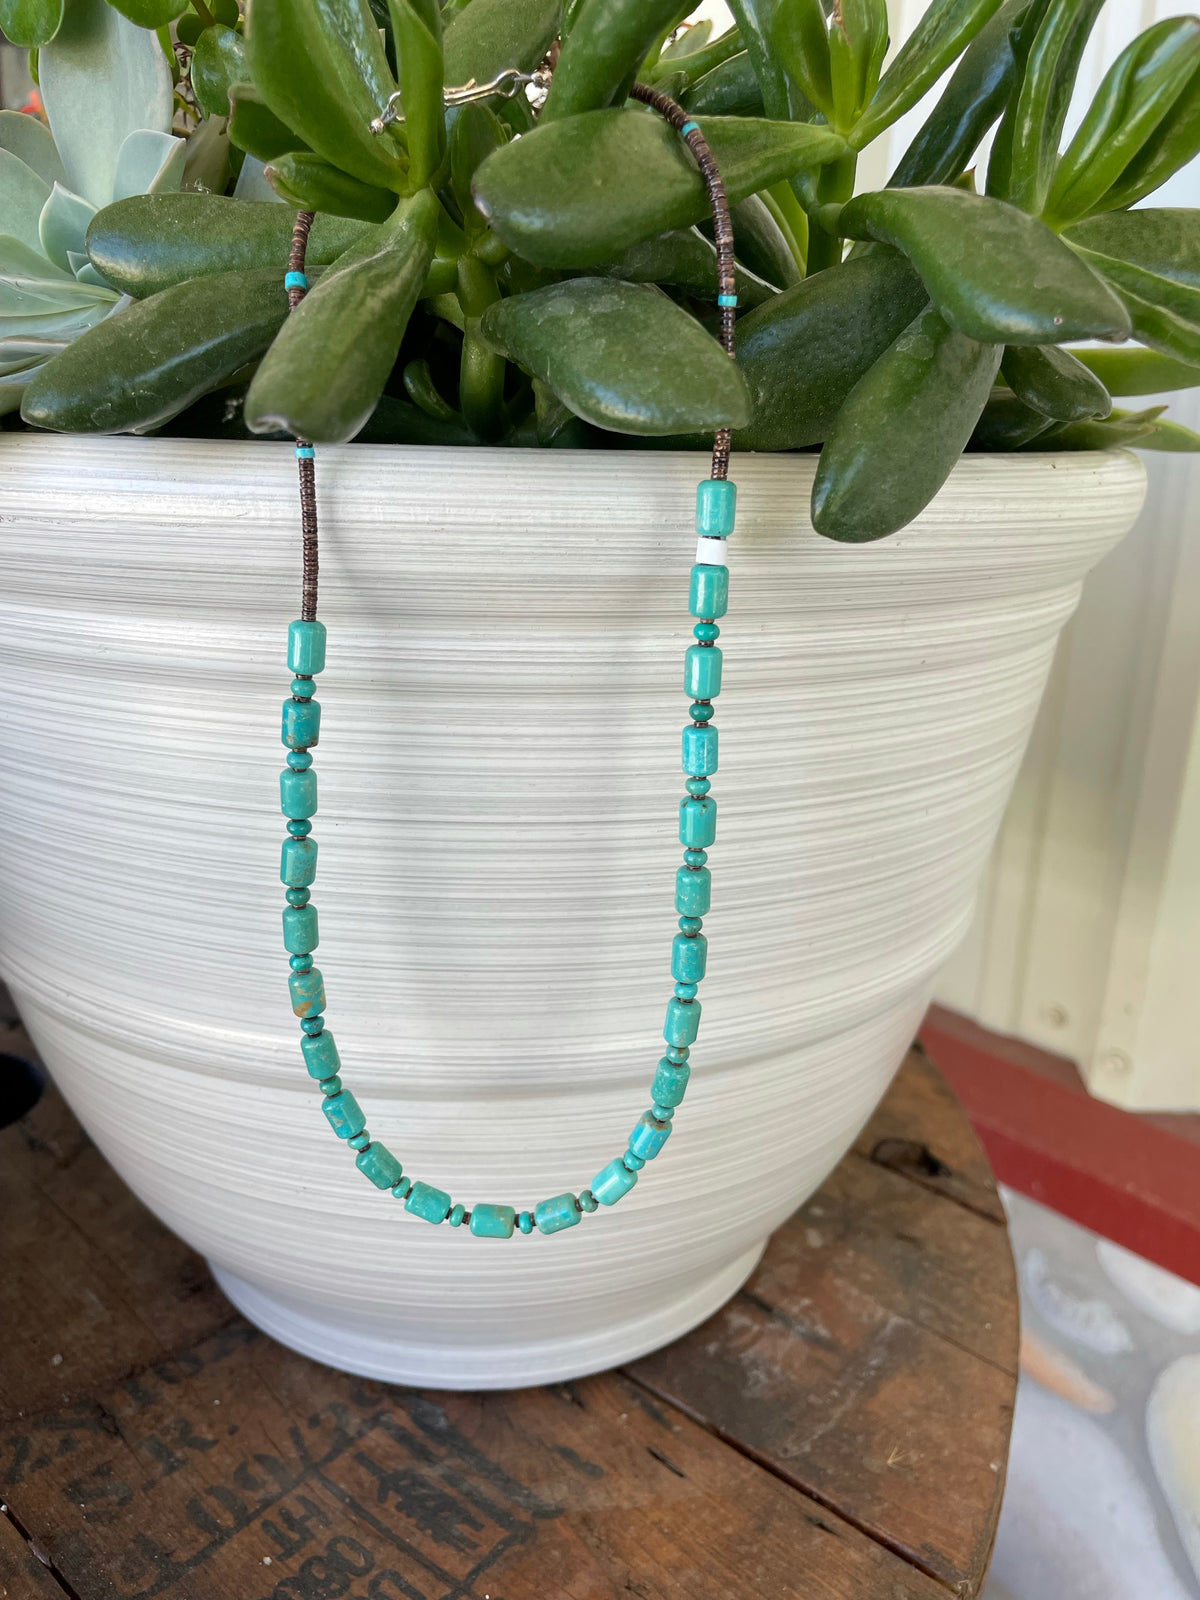 Ye ole’ turquoise necklace